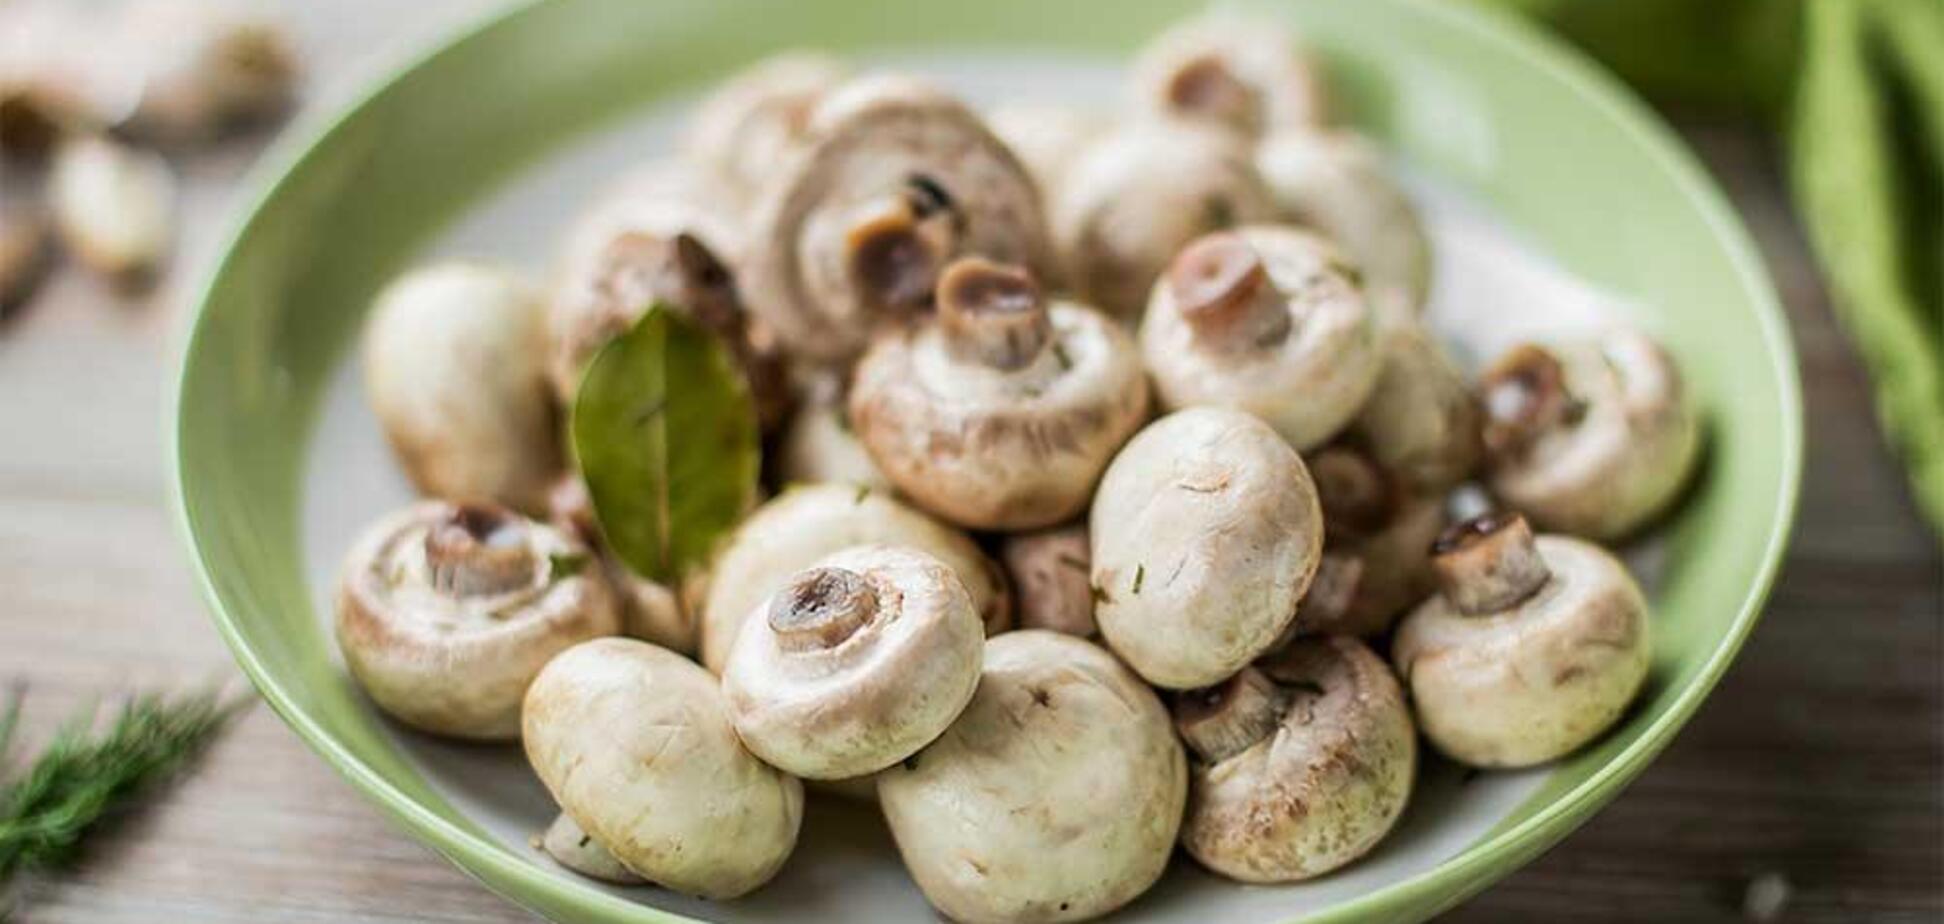 Рецепт маринованих грибів